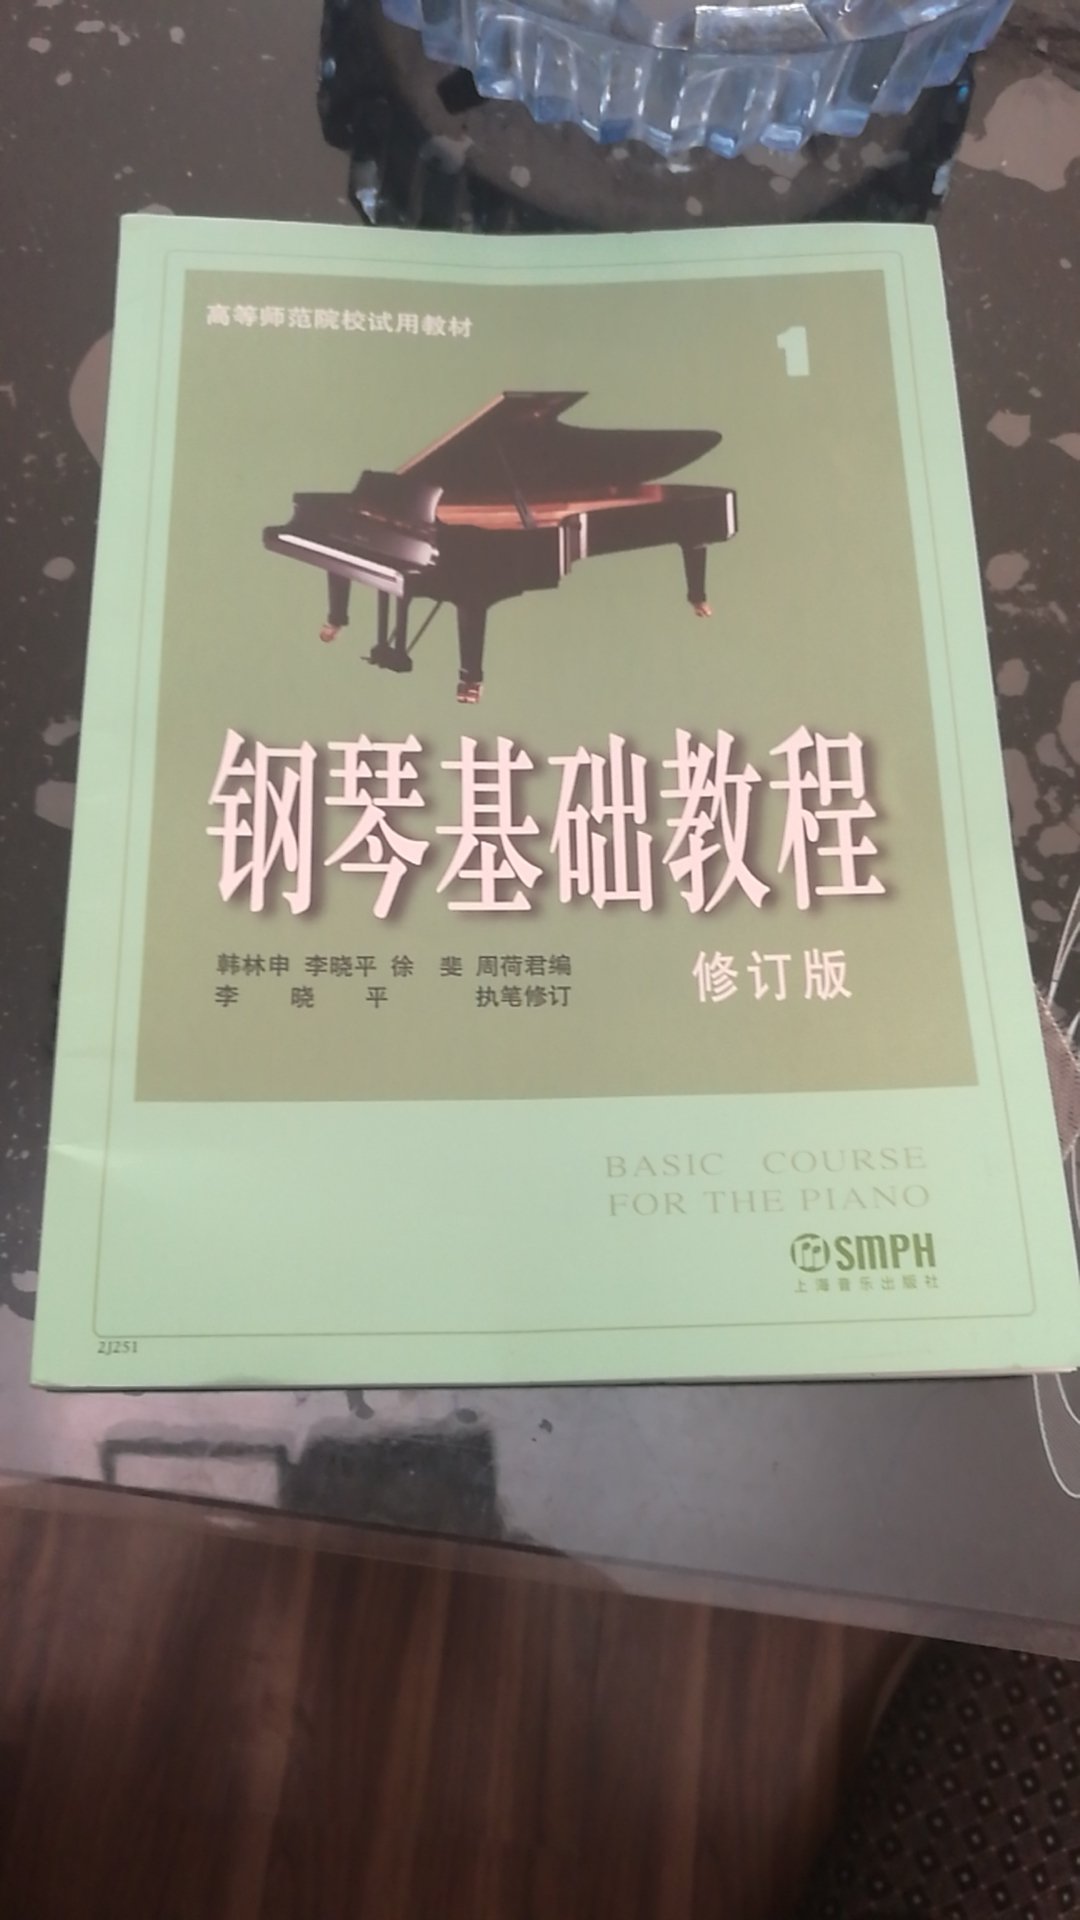 收到了钢琴书，到货挺快的，课本也不错。值得在此购买。